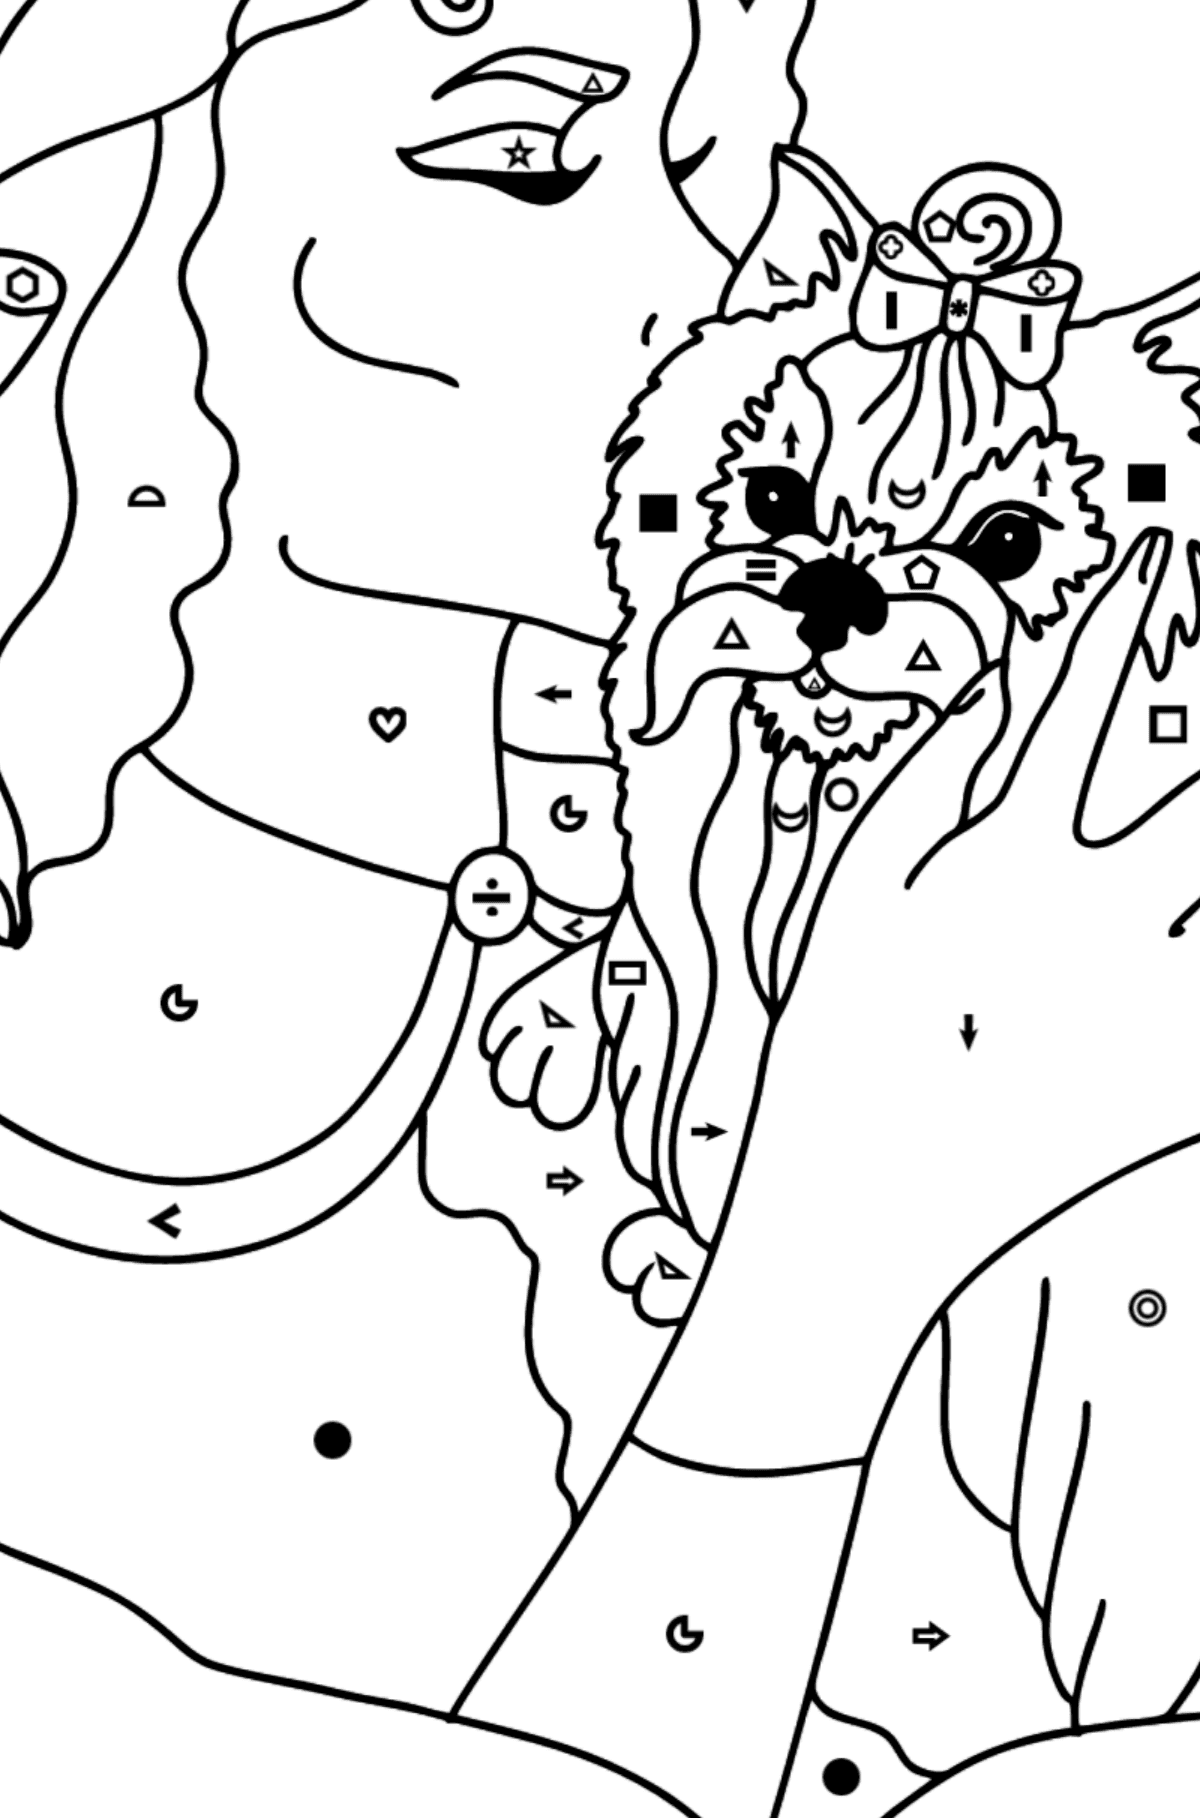 Раскраска Йоркширский терьер с хозяином - Полезная картинка для Детей